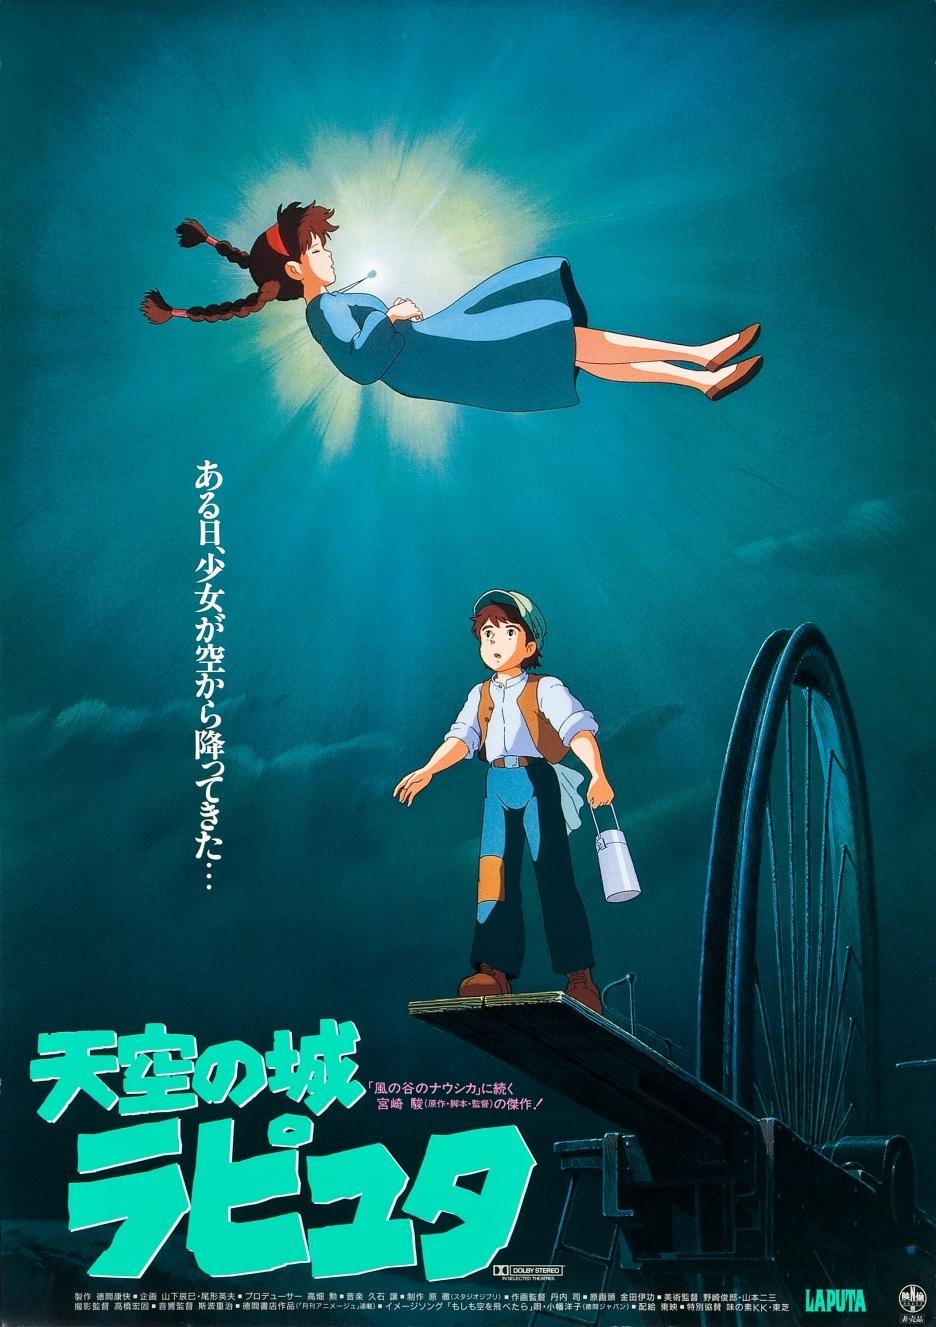 poster phim lau dai tren khong - Lâu đài trên không Laputa: Giấc mơ siêu thực của loài người